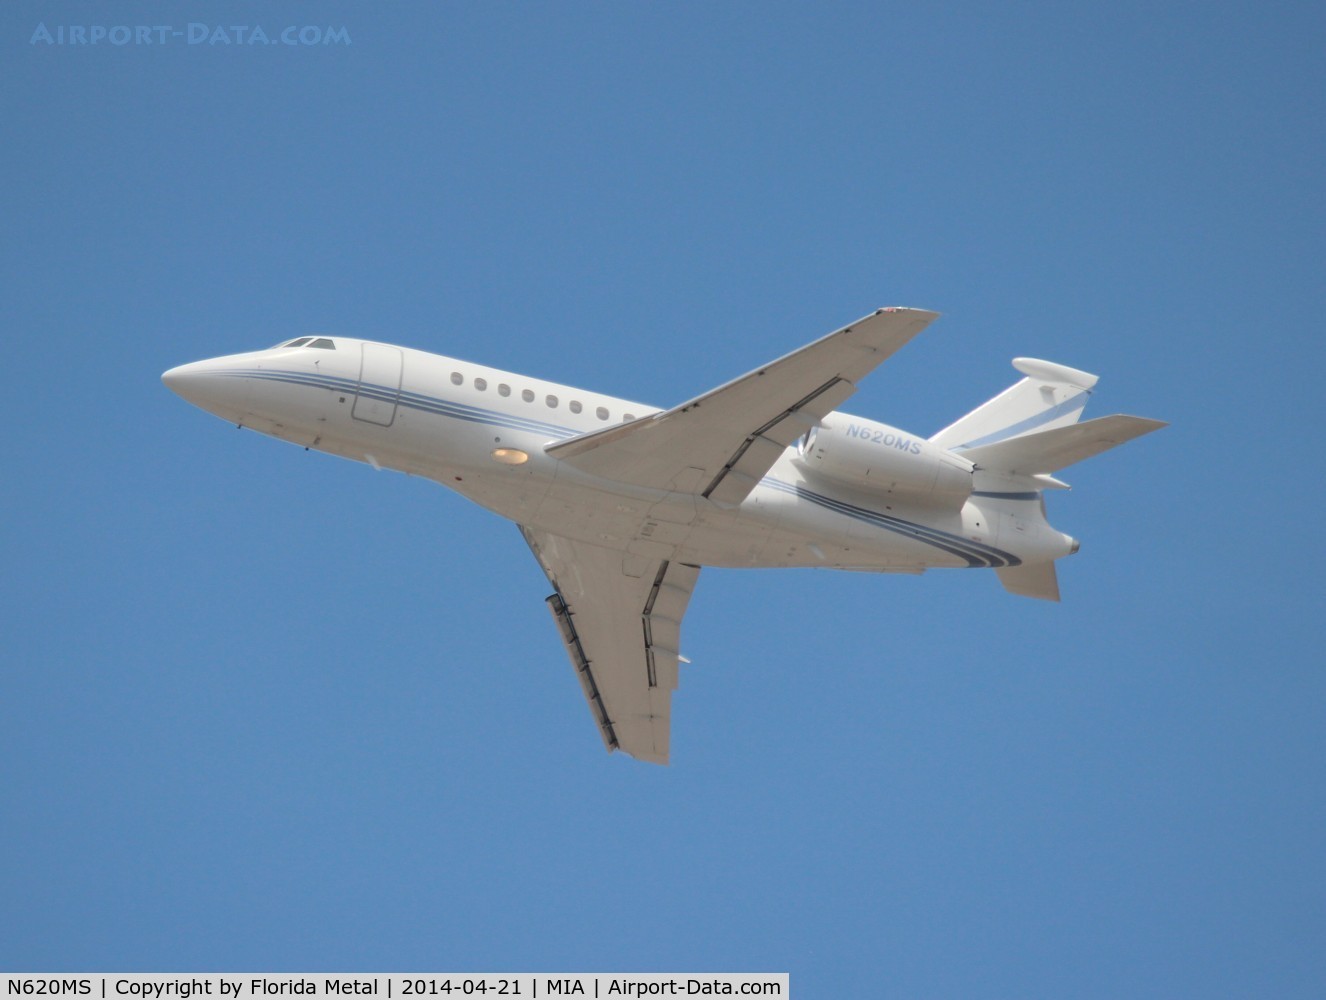 N620MS, 2004 Dassault Falcon 2000EX C/N 31, Falcon 2000EX